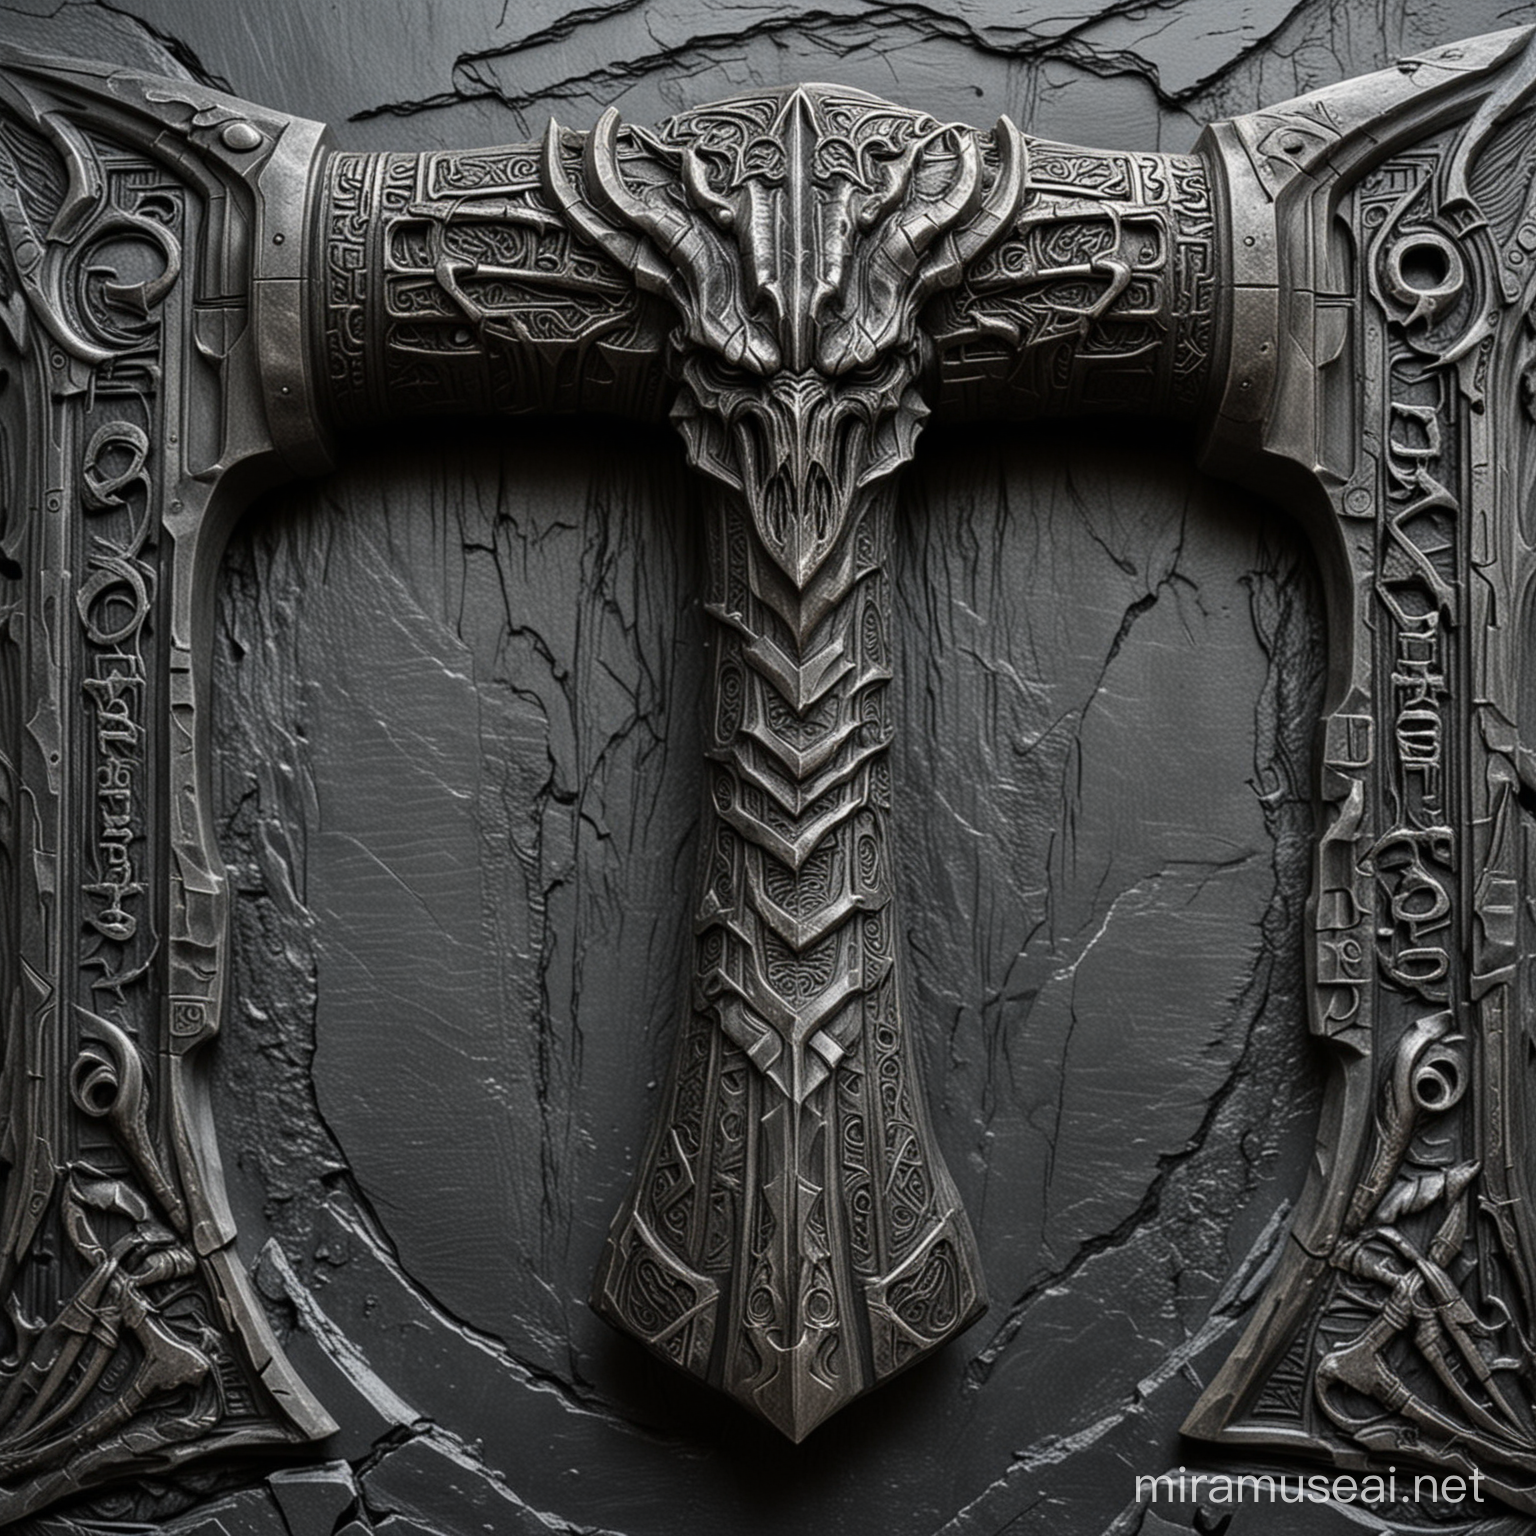 Intricately Carved Mjlnir Thor Hammer with HR Giger Dragon Klingon Designs on Slate Background